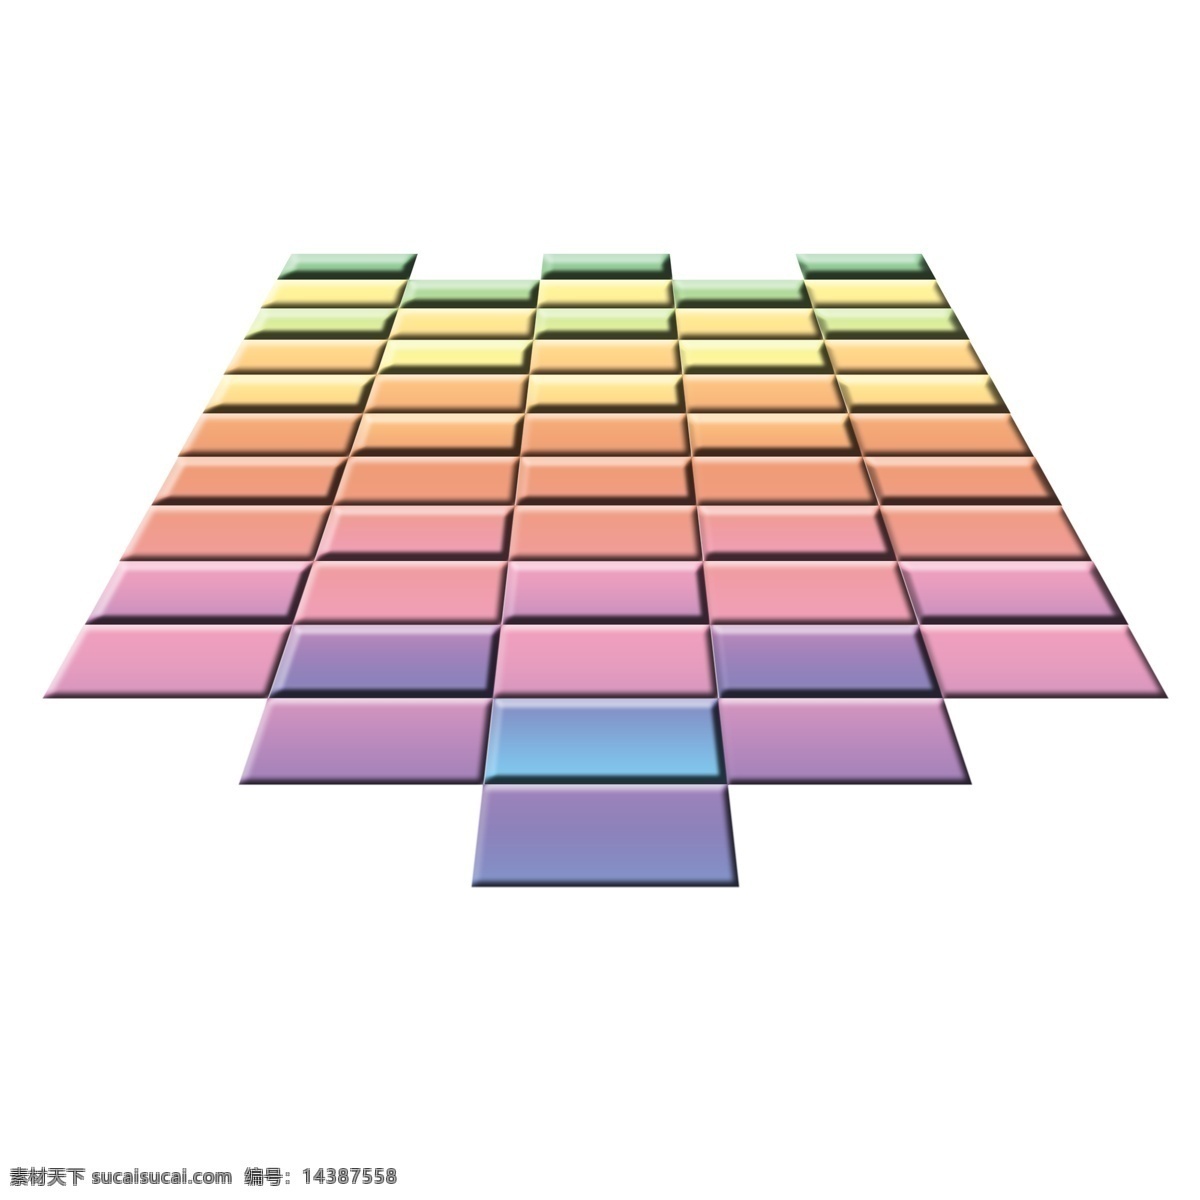 彩色 系 方块 音阶 拼 砖 地板 瓷砖 彩色系 音阶拼砖 地板瓷砖 拼砖地板瓷砖